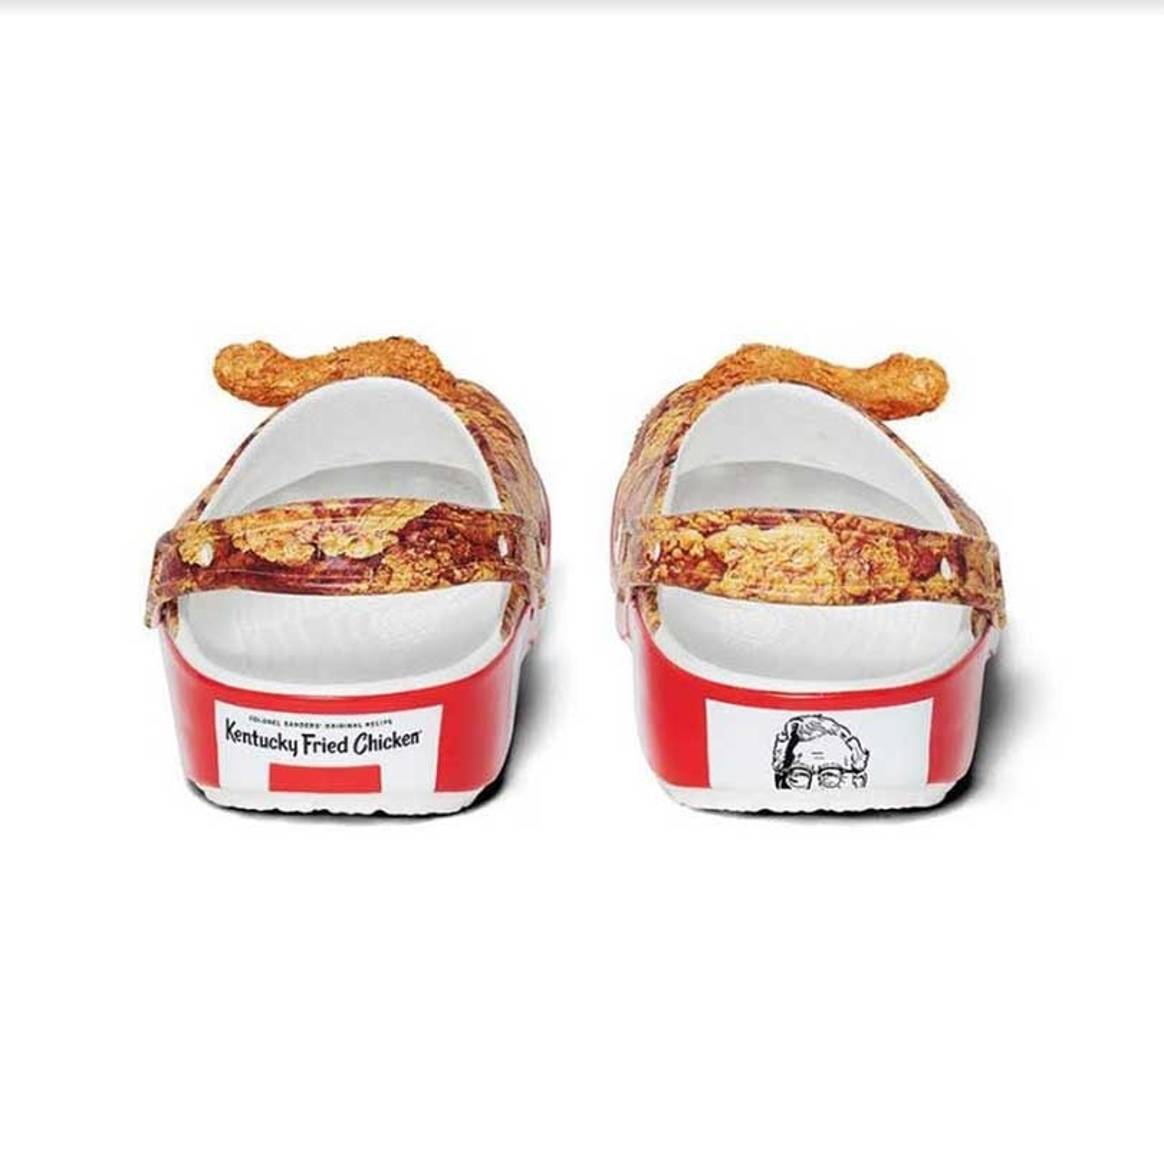 Crocs и KFC создали обувь с ароматным декором в виде жареной курицы